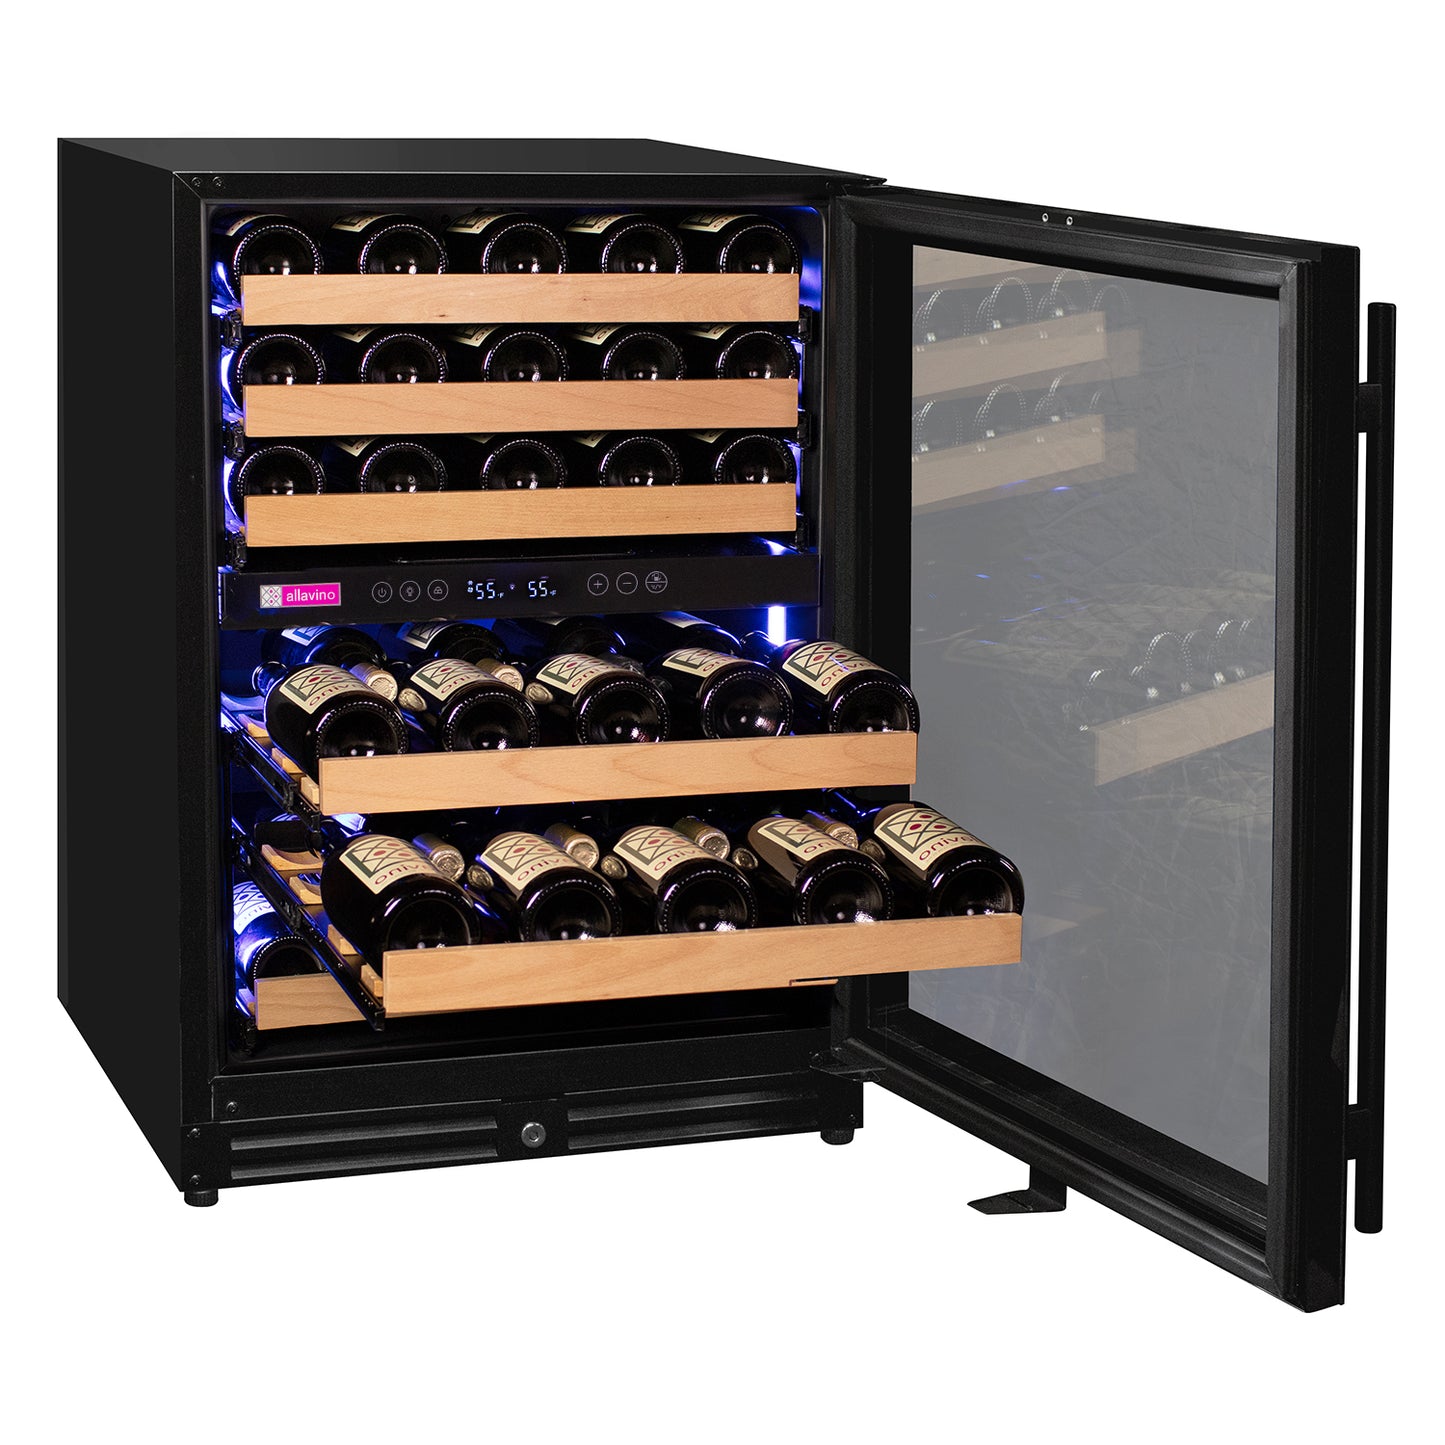 Allavino 56 Bottle Dual Zone Right Hinge Black Glass Wine Refrigerator